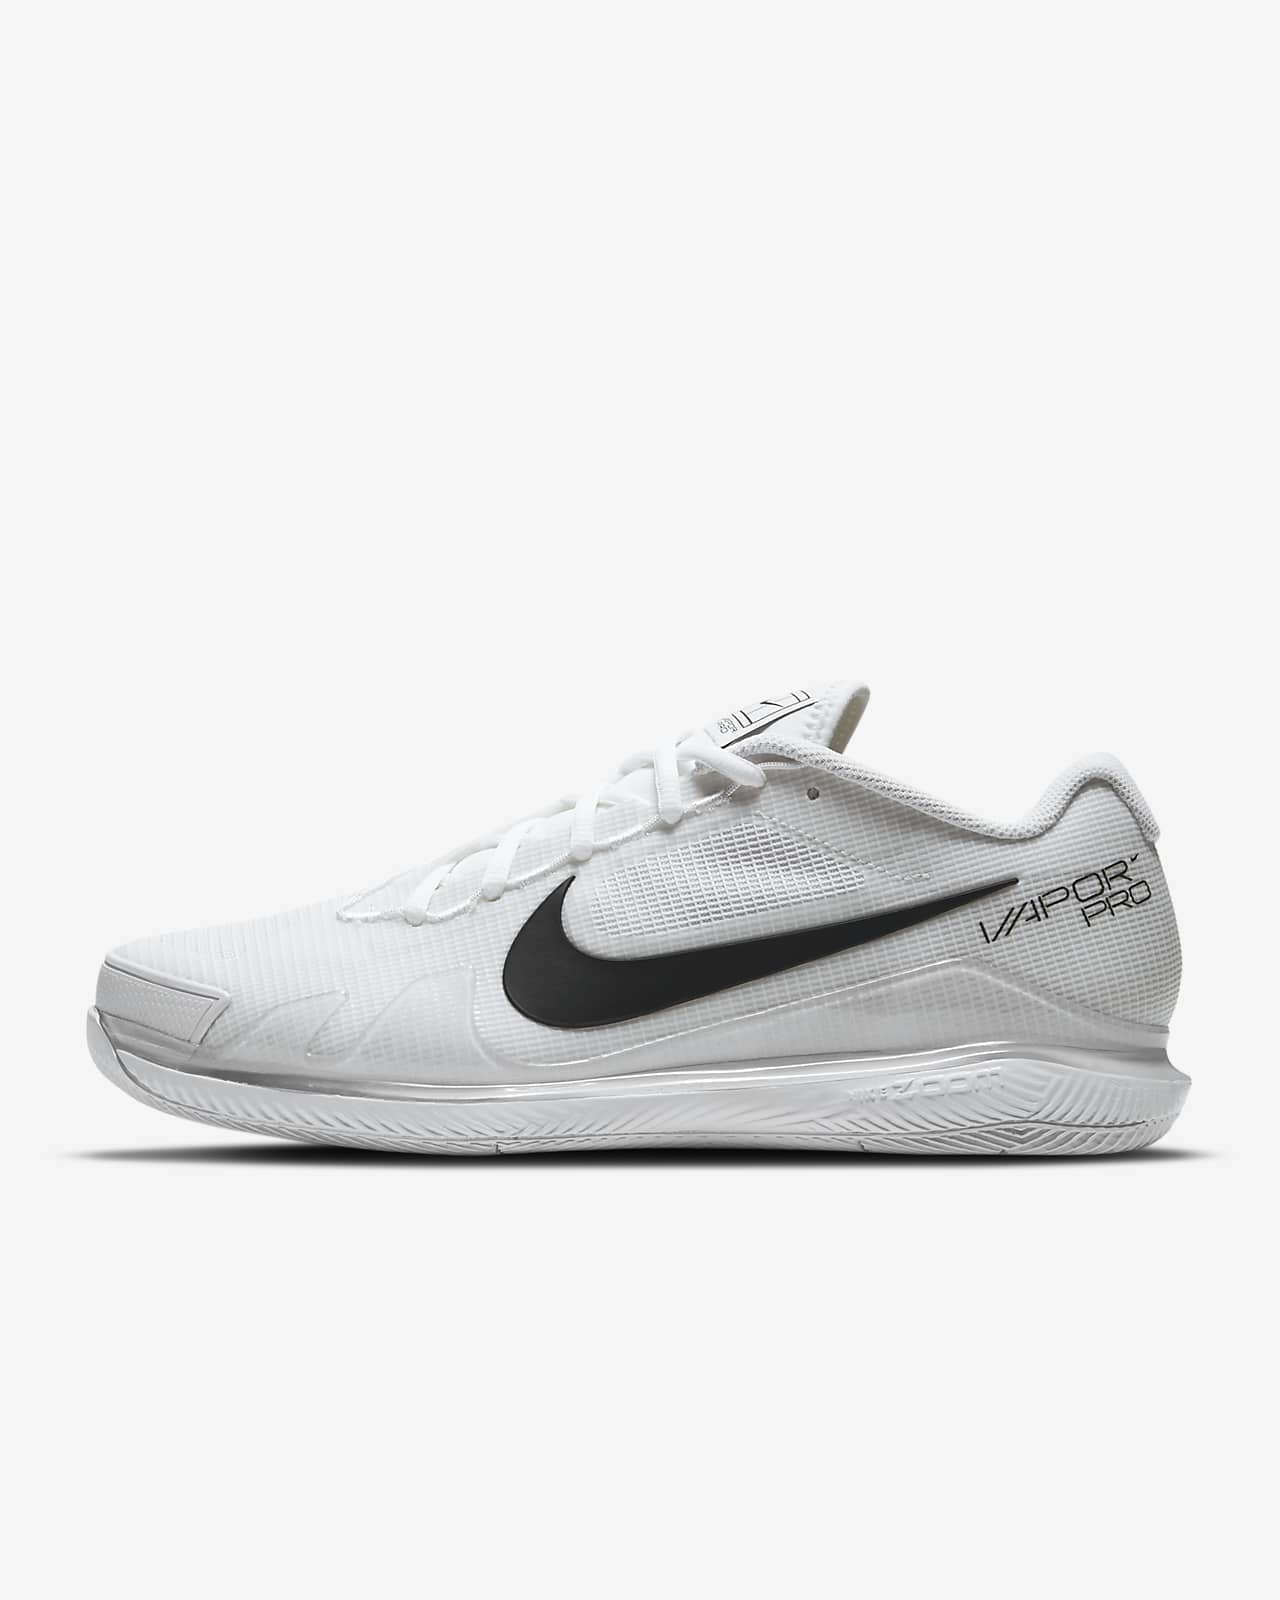 تستخدم البطاريات الأولية مرة واحدة فقط NikeCourt Air Zoom Vapor Pro Men's Hard-Court Tennis Shoe. Nike CA تستخدم البطاريات الأولية مرة واحدة فقط